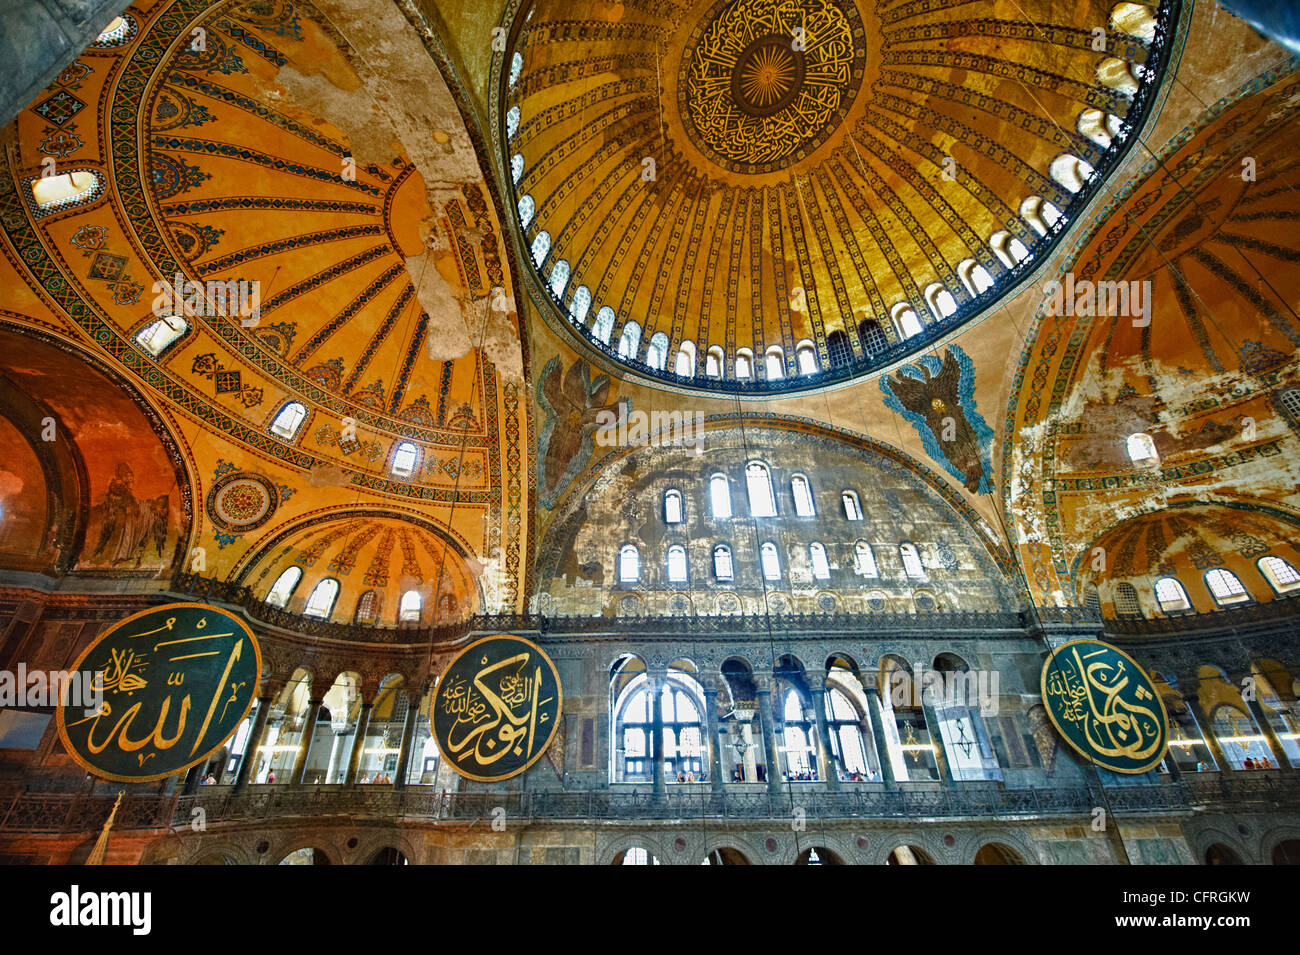 La décoration islamique sur les dômes de l'intérieur de Sainte-sophie (Ayasofya) , Istanbul, Turquie Banque D'Images